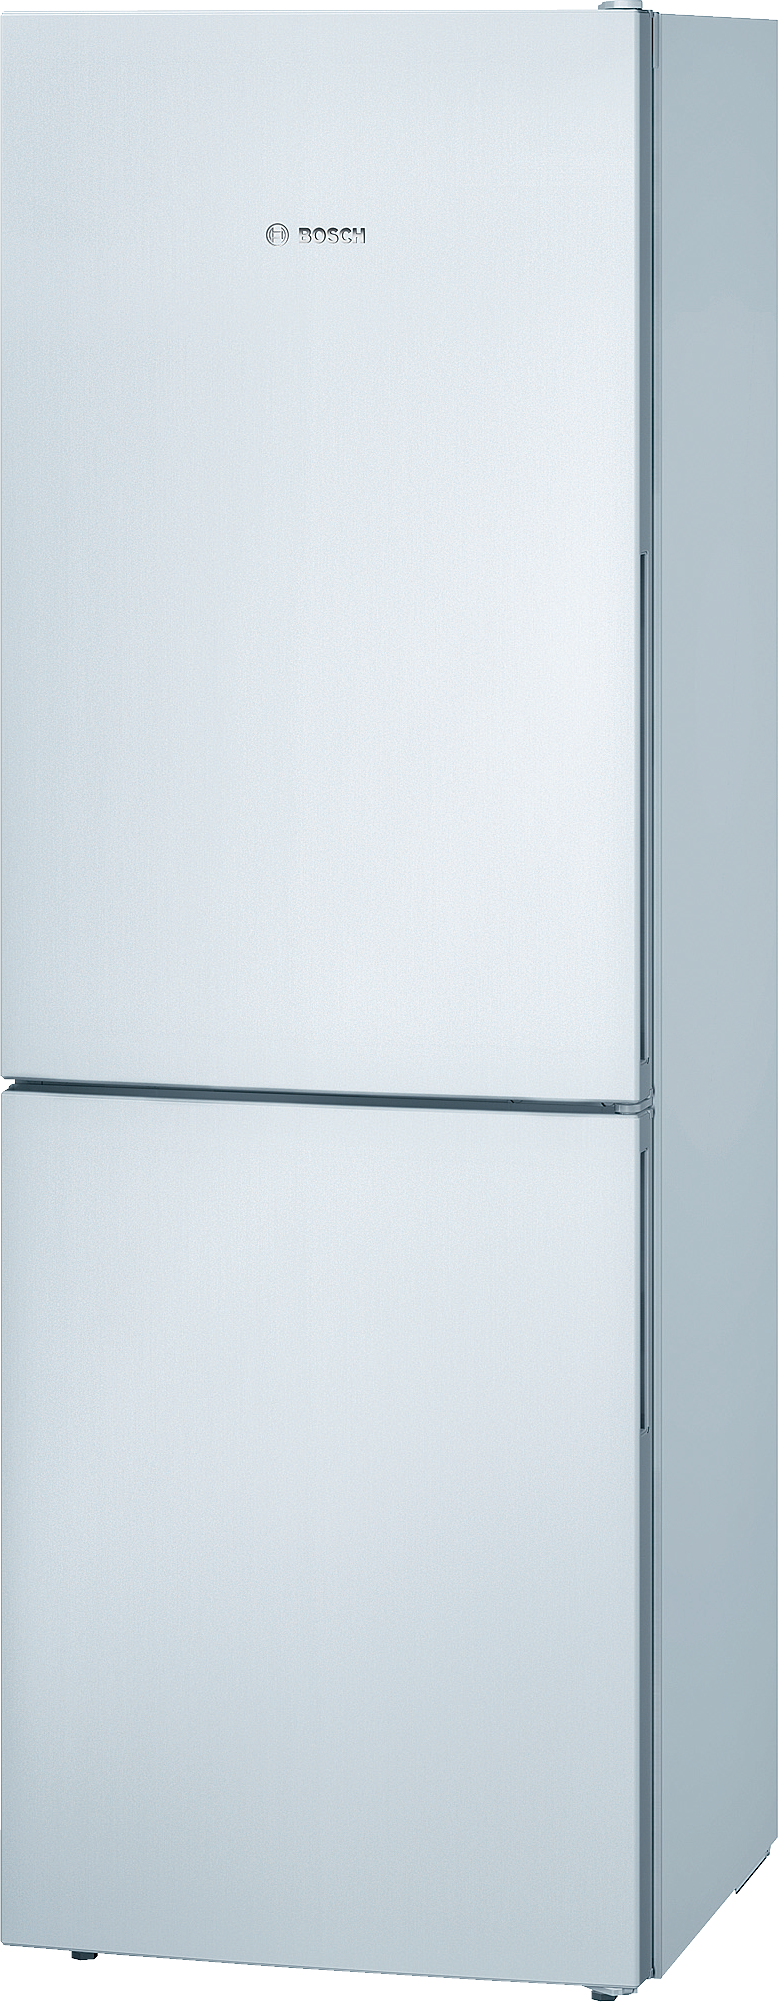 Réfrigérateur congélateur à poser réversible Bosch KGV33VWAS 192L